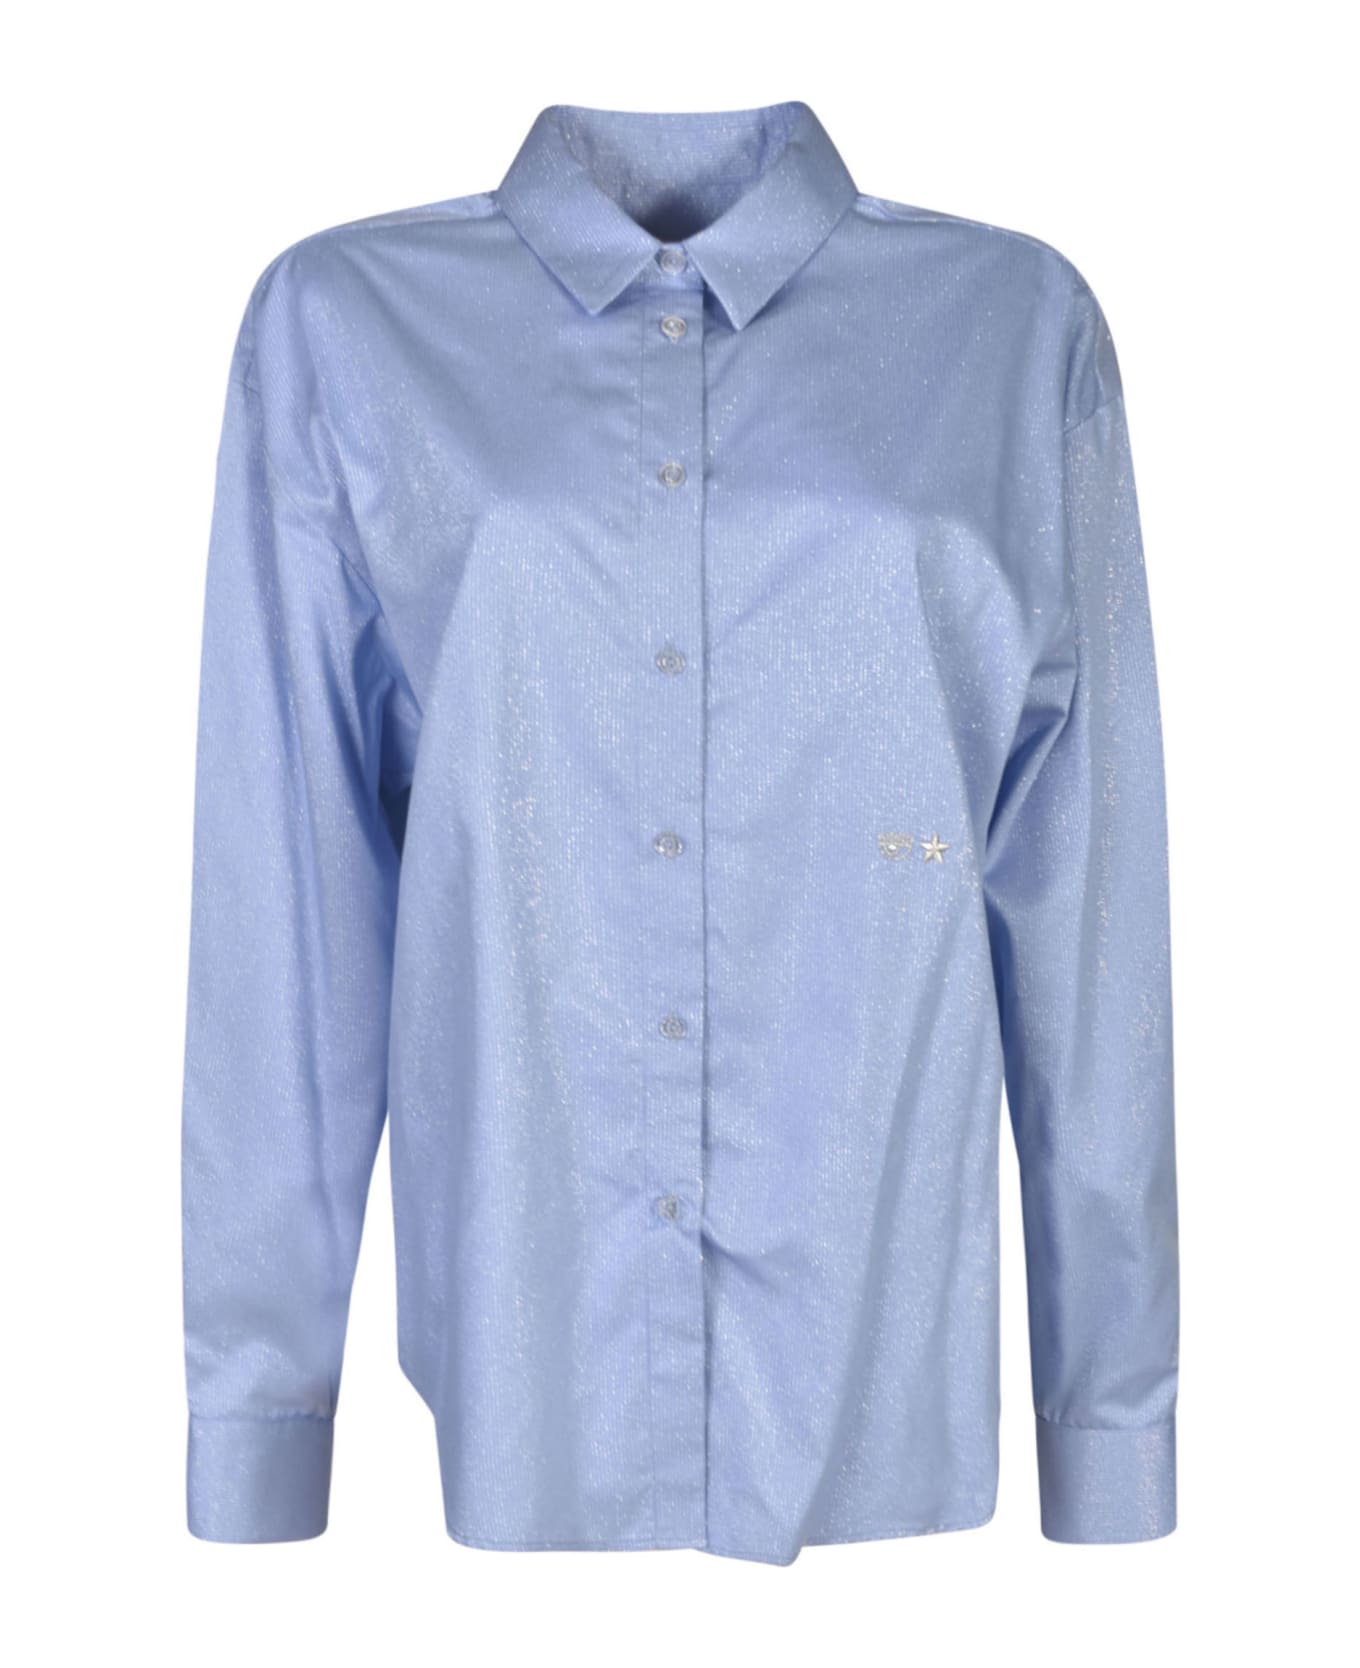 Chiara Ferragni Long-sleeved Glittered Shirt - Blue